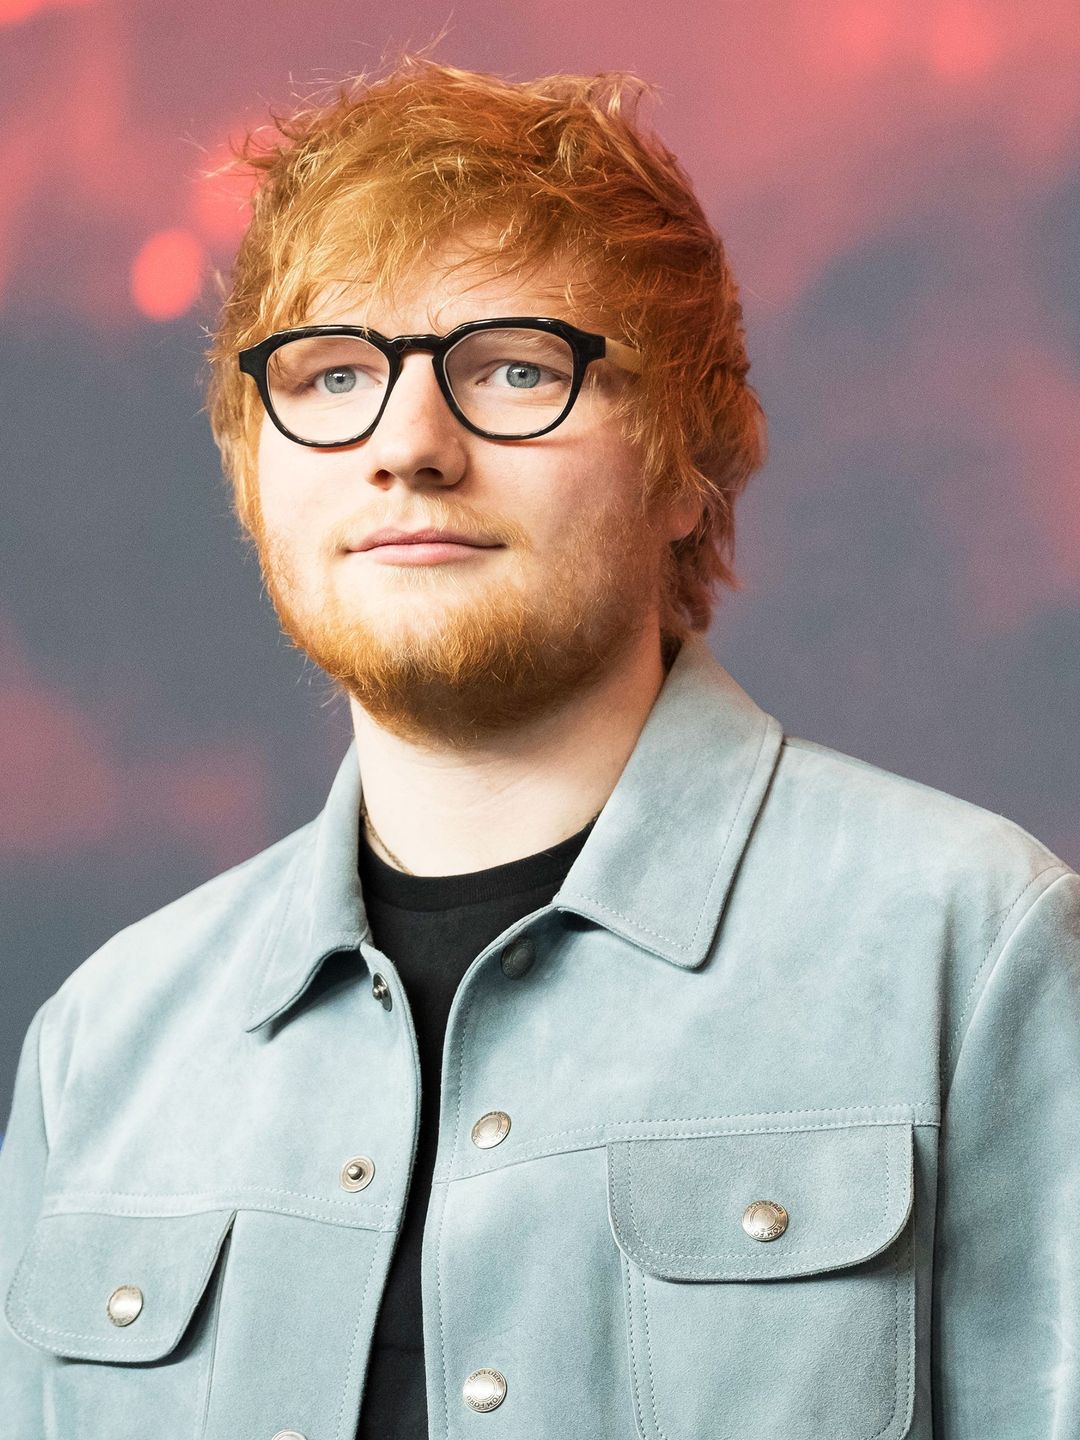 Ed Sheeran dating history